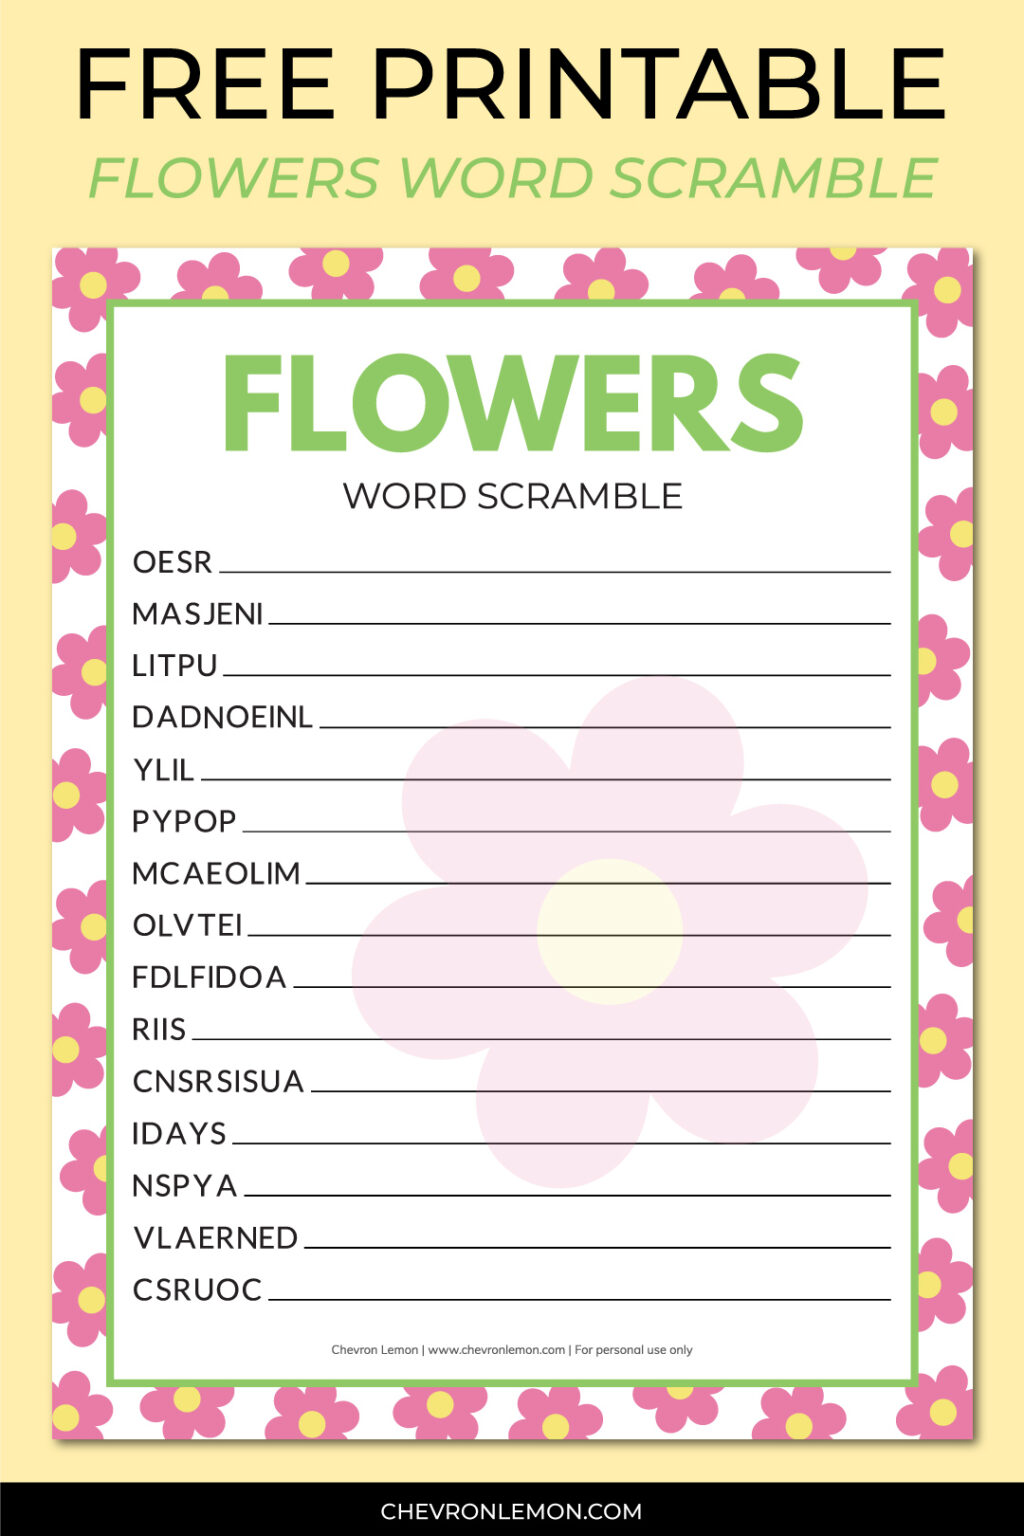 Flower Word Scramble Chevron Lemon 01 1024x1536 